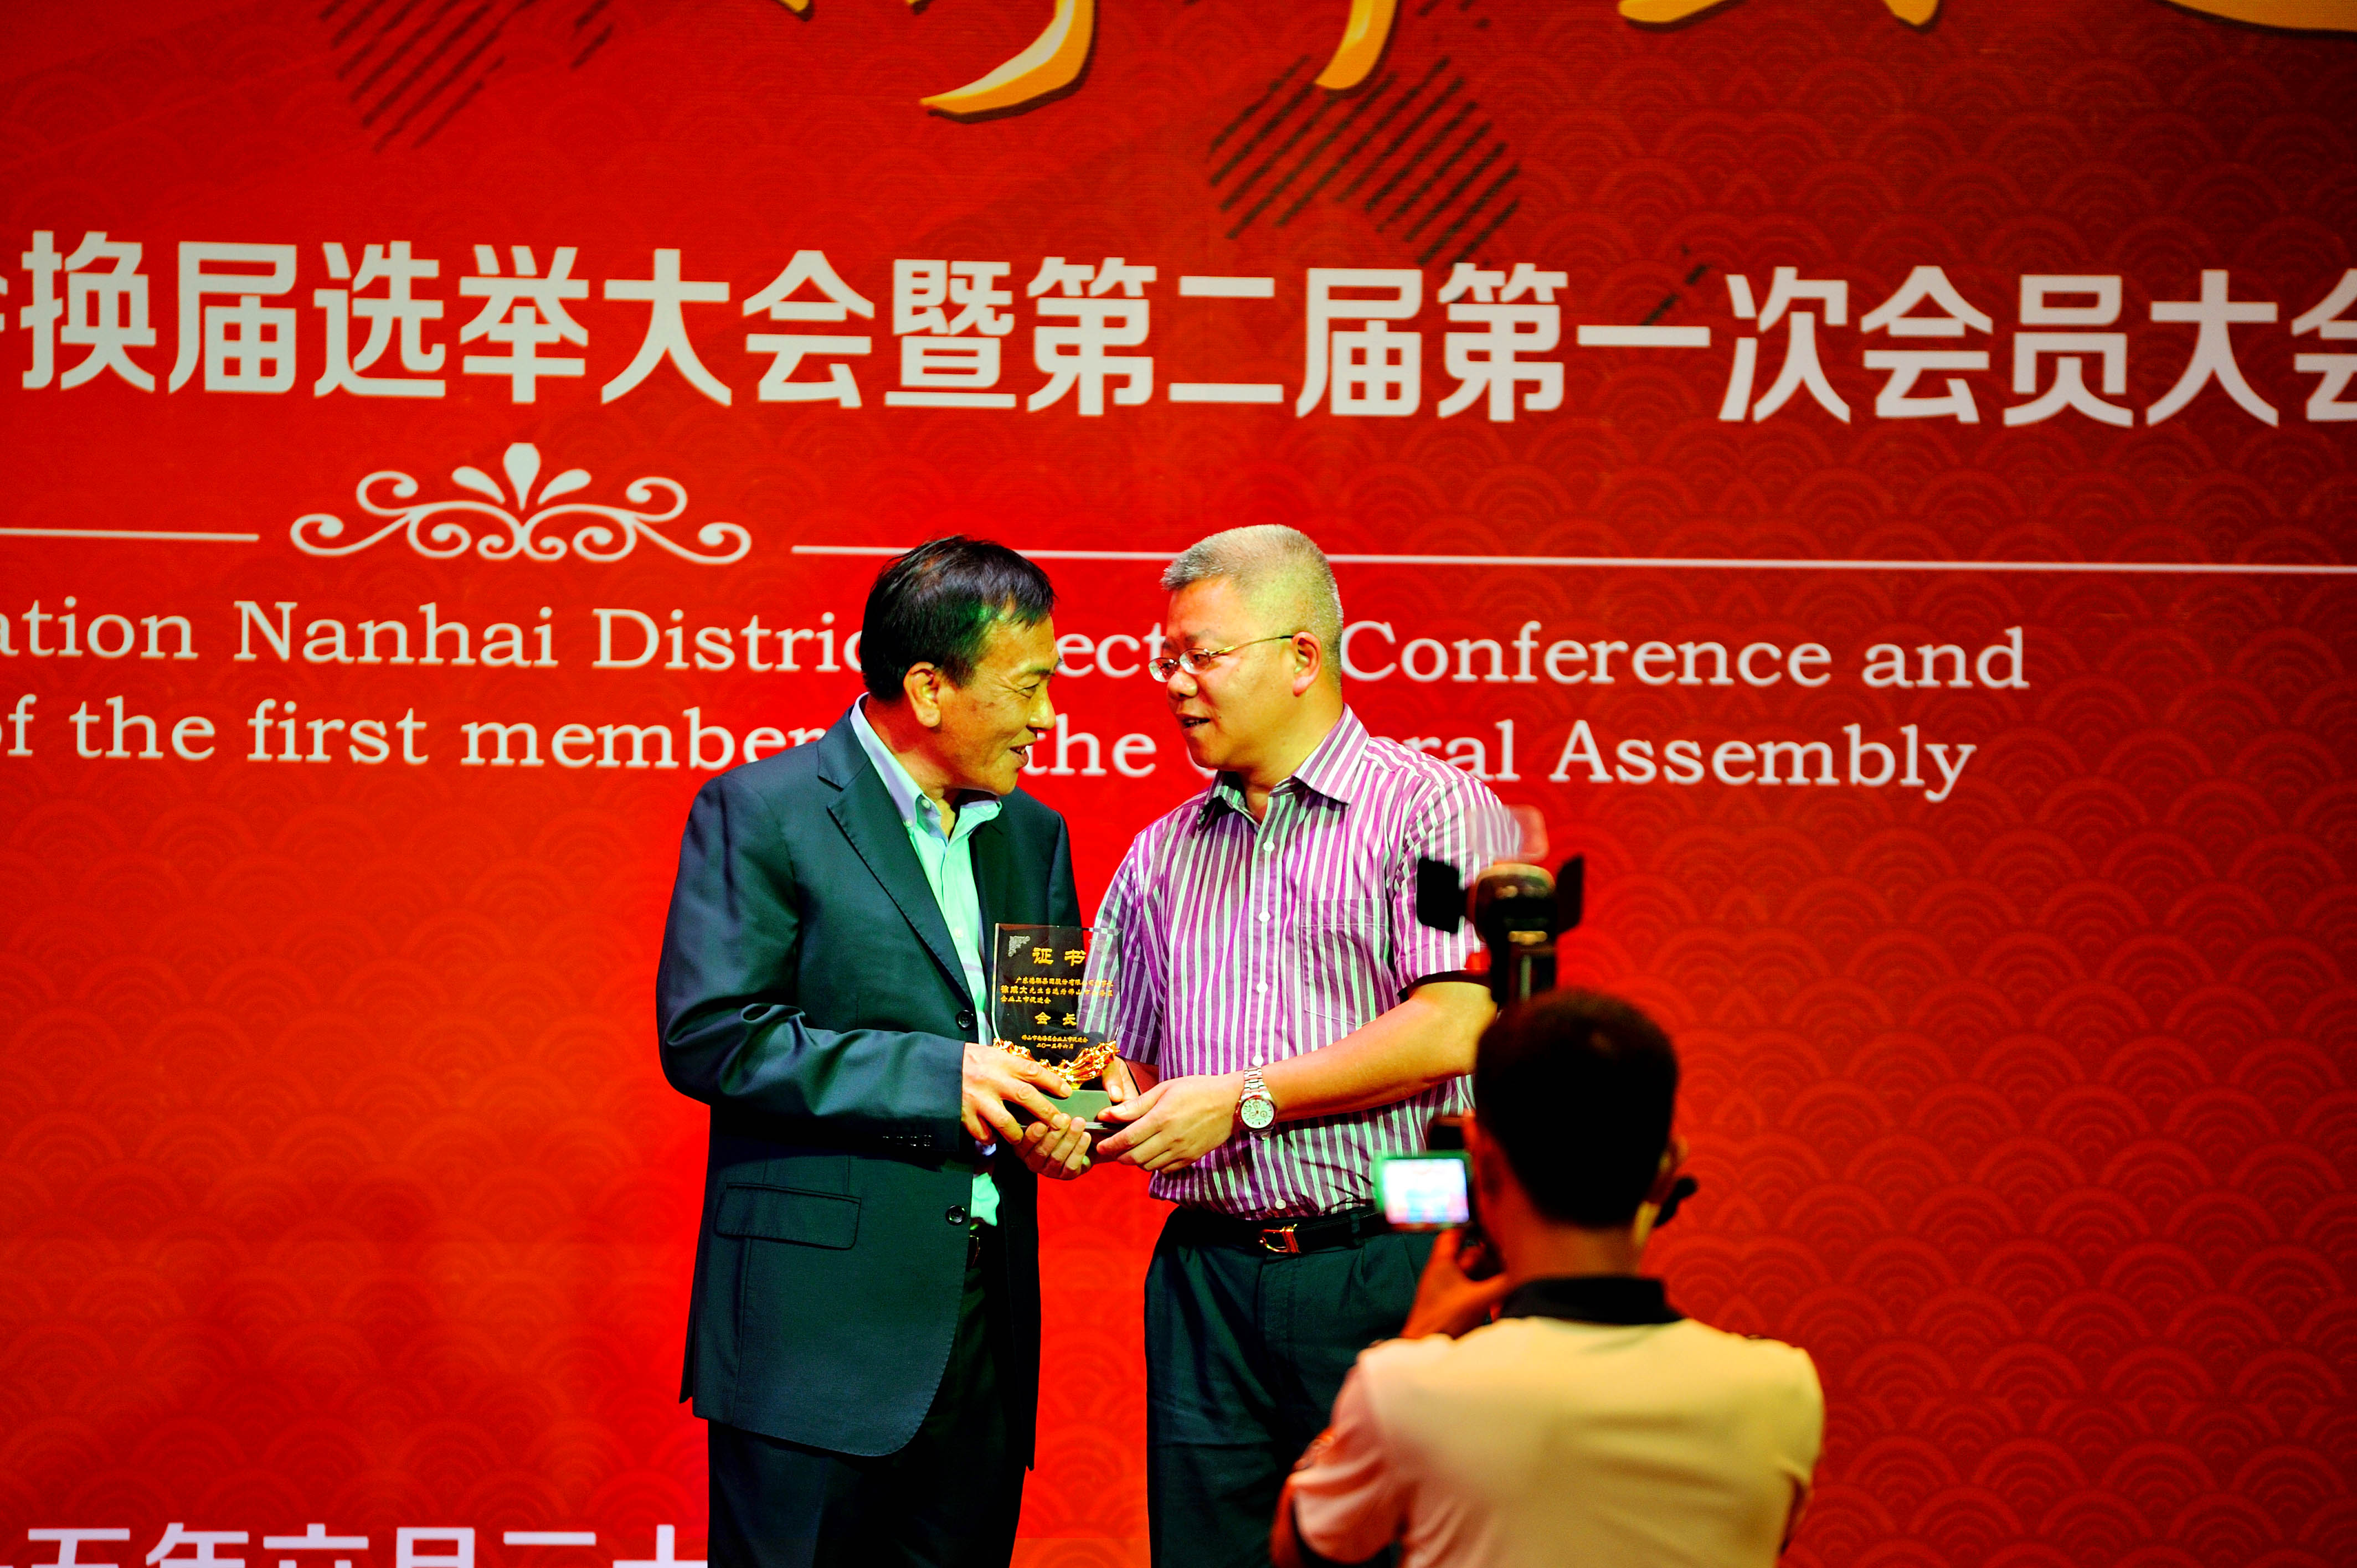 4、刘铭恩副区长（右一）为徐咸大会长颁发牌匾.jpg